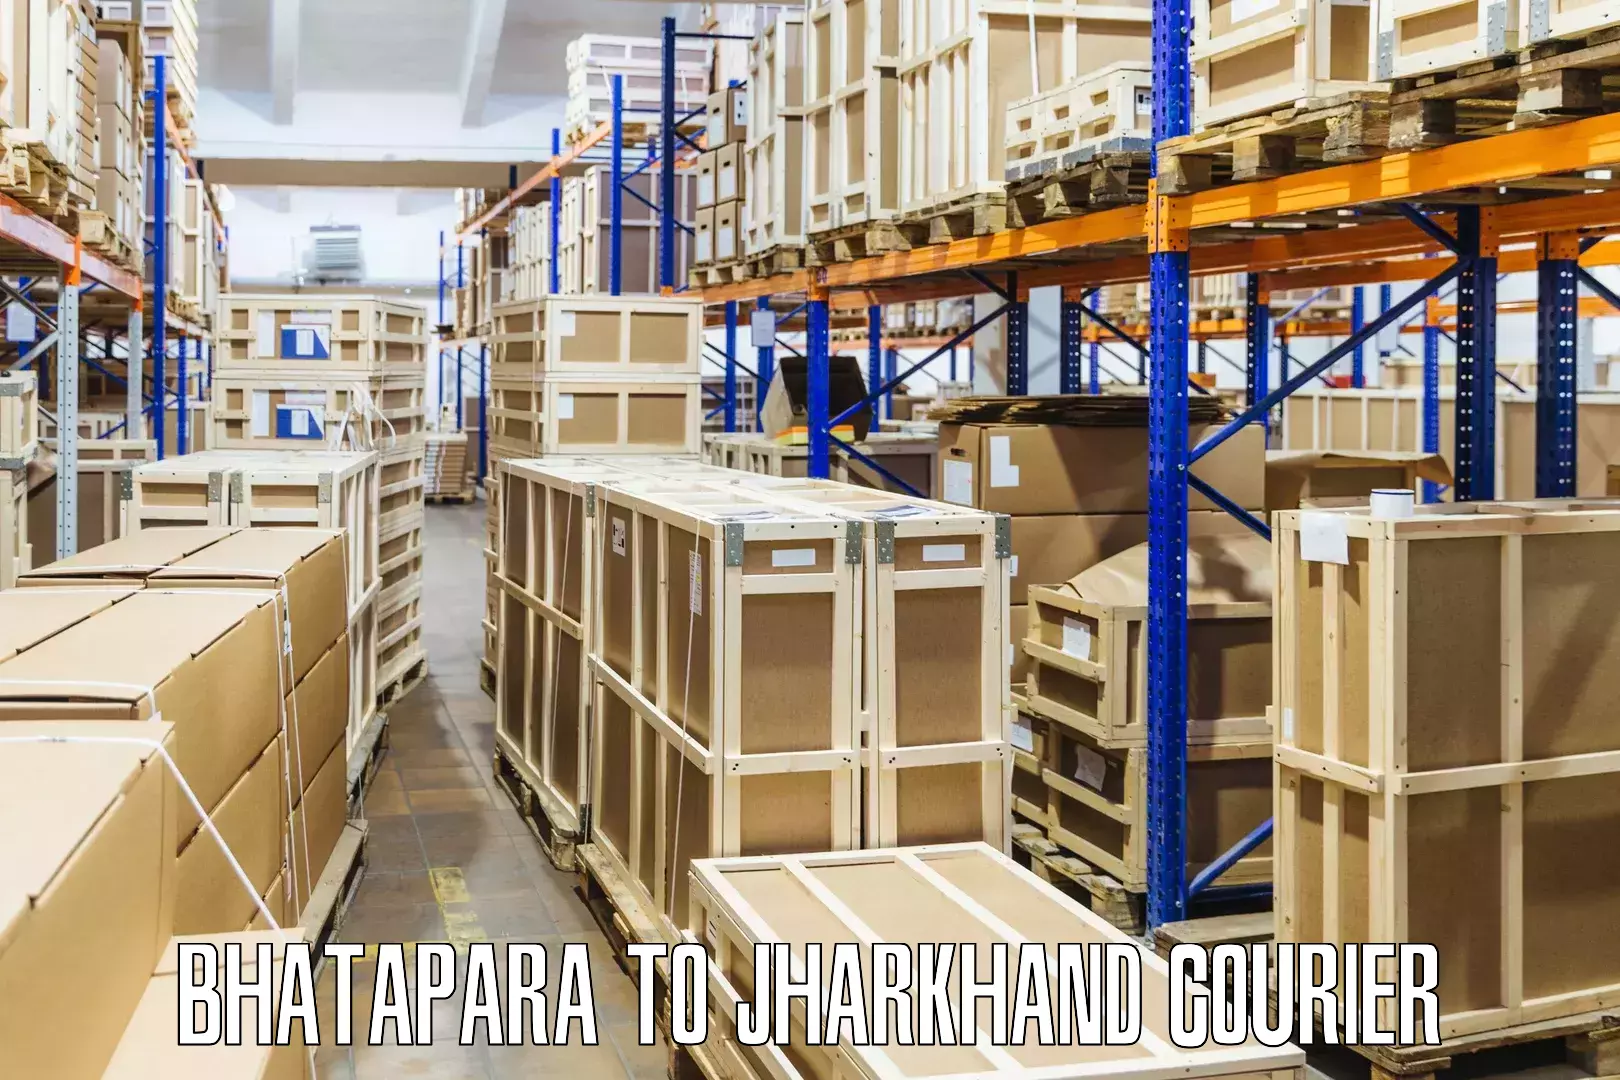 Small parcel delivery Bhatapara to Panki Palamu